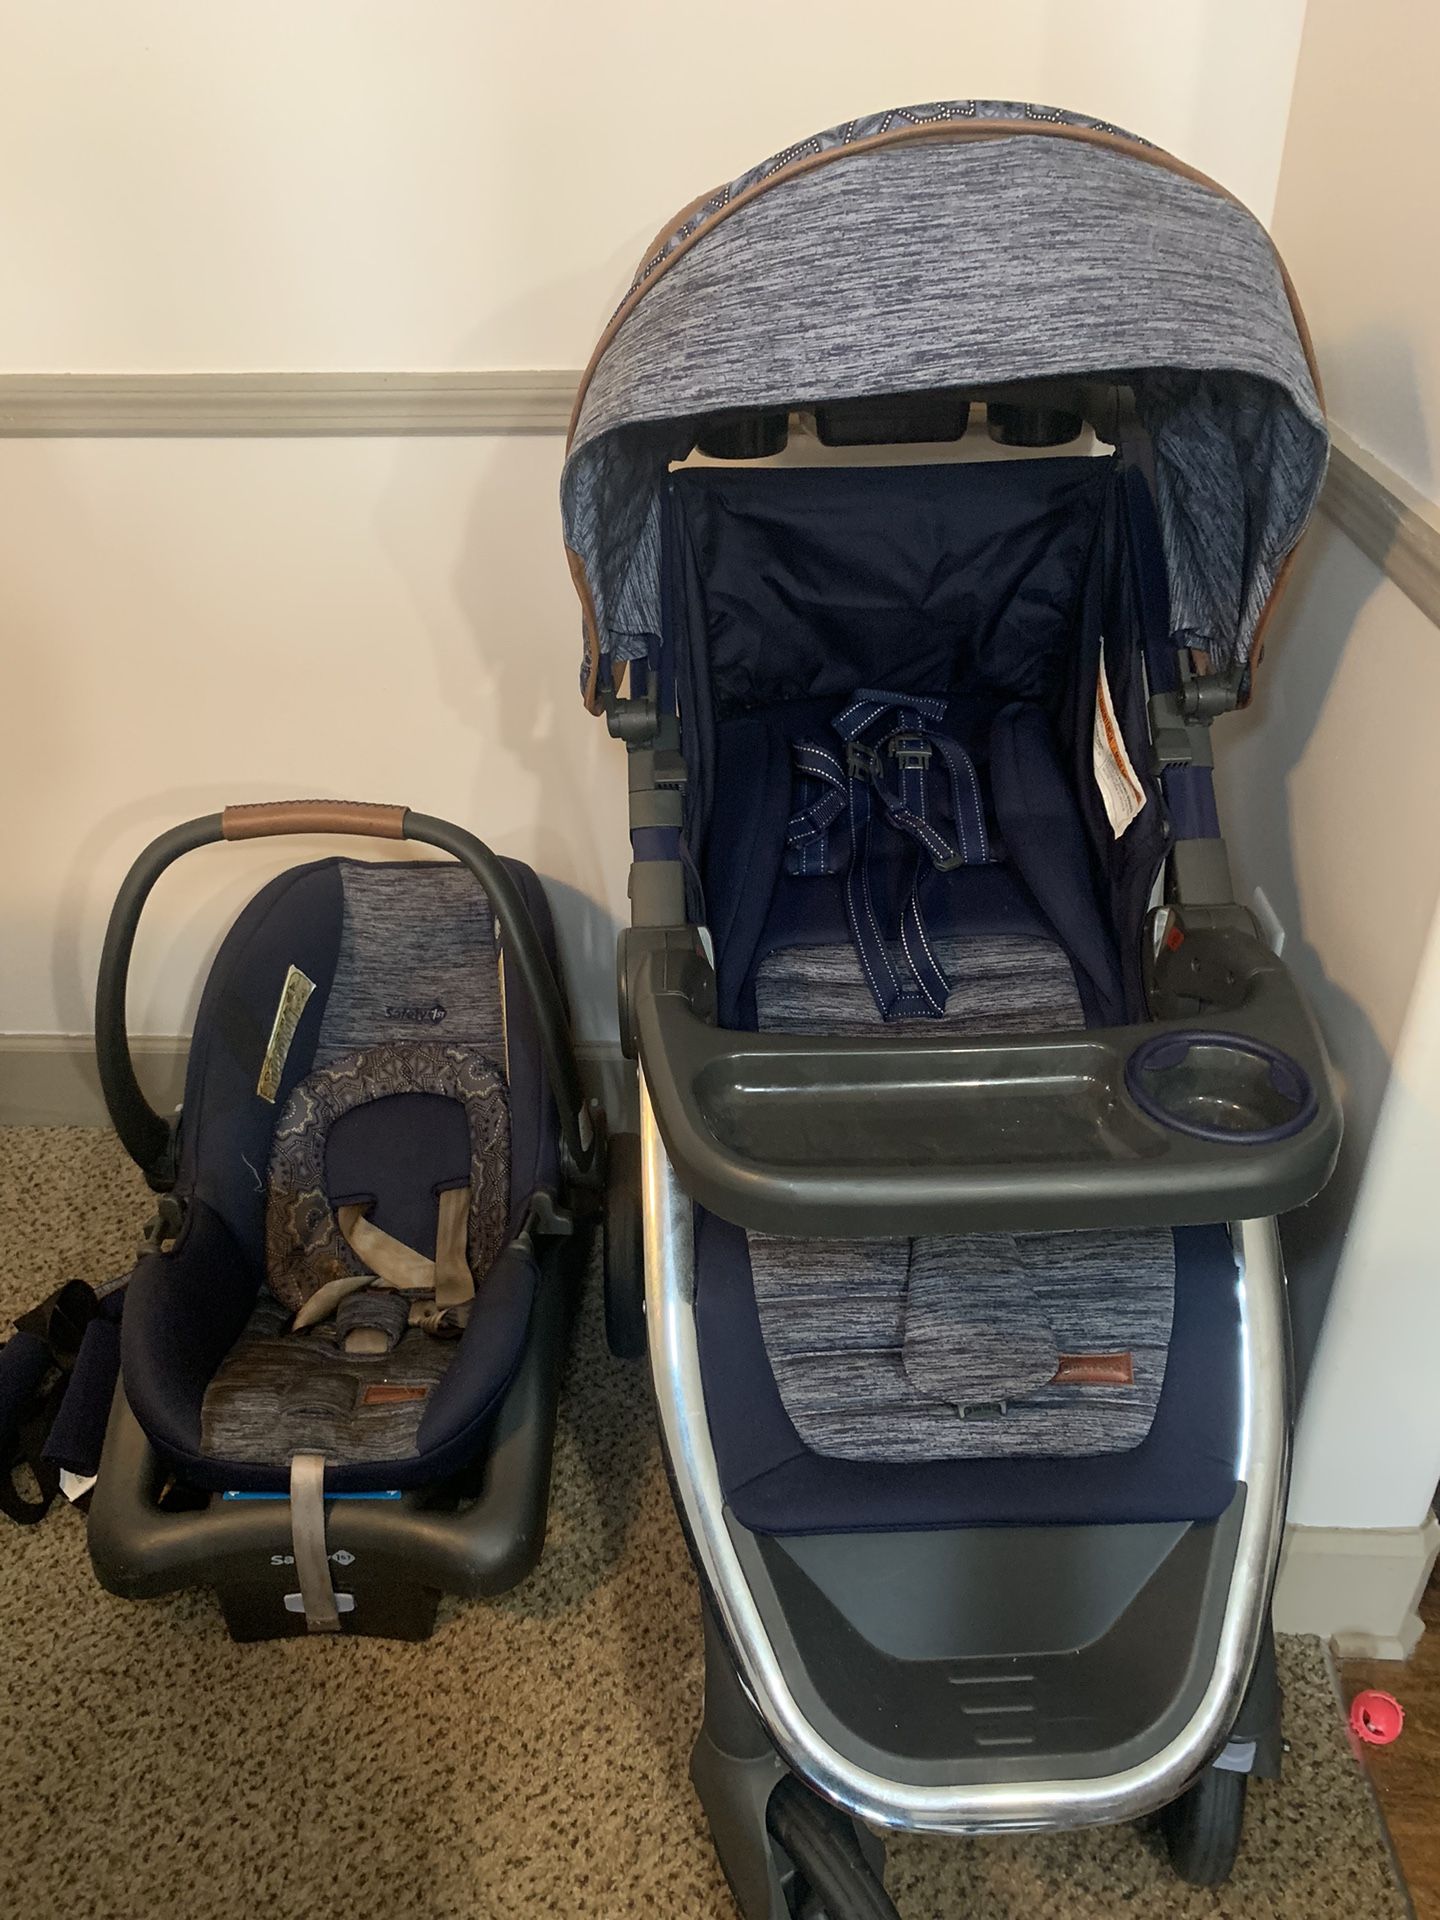 Monbebe Dash Travel System Stroller and Infant Car Seat, Boho